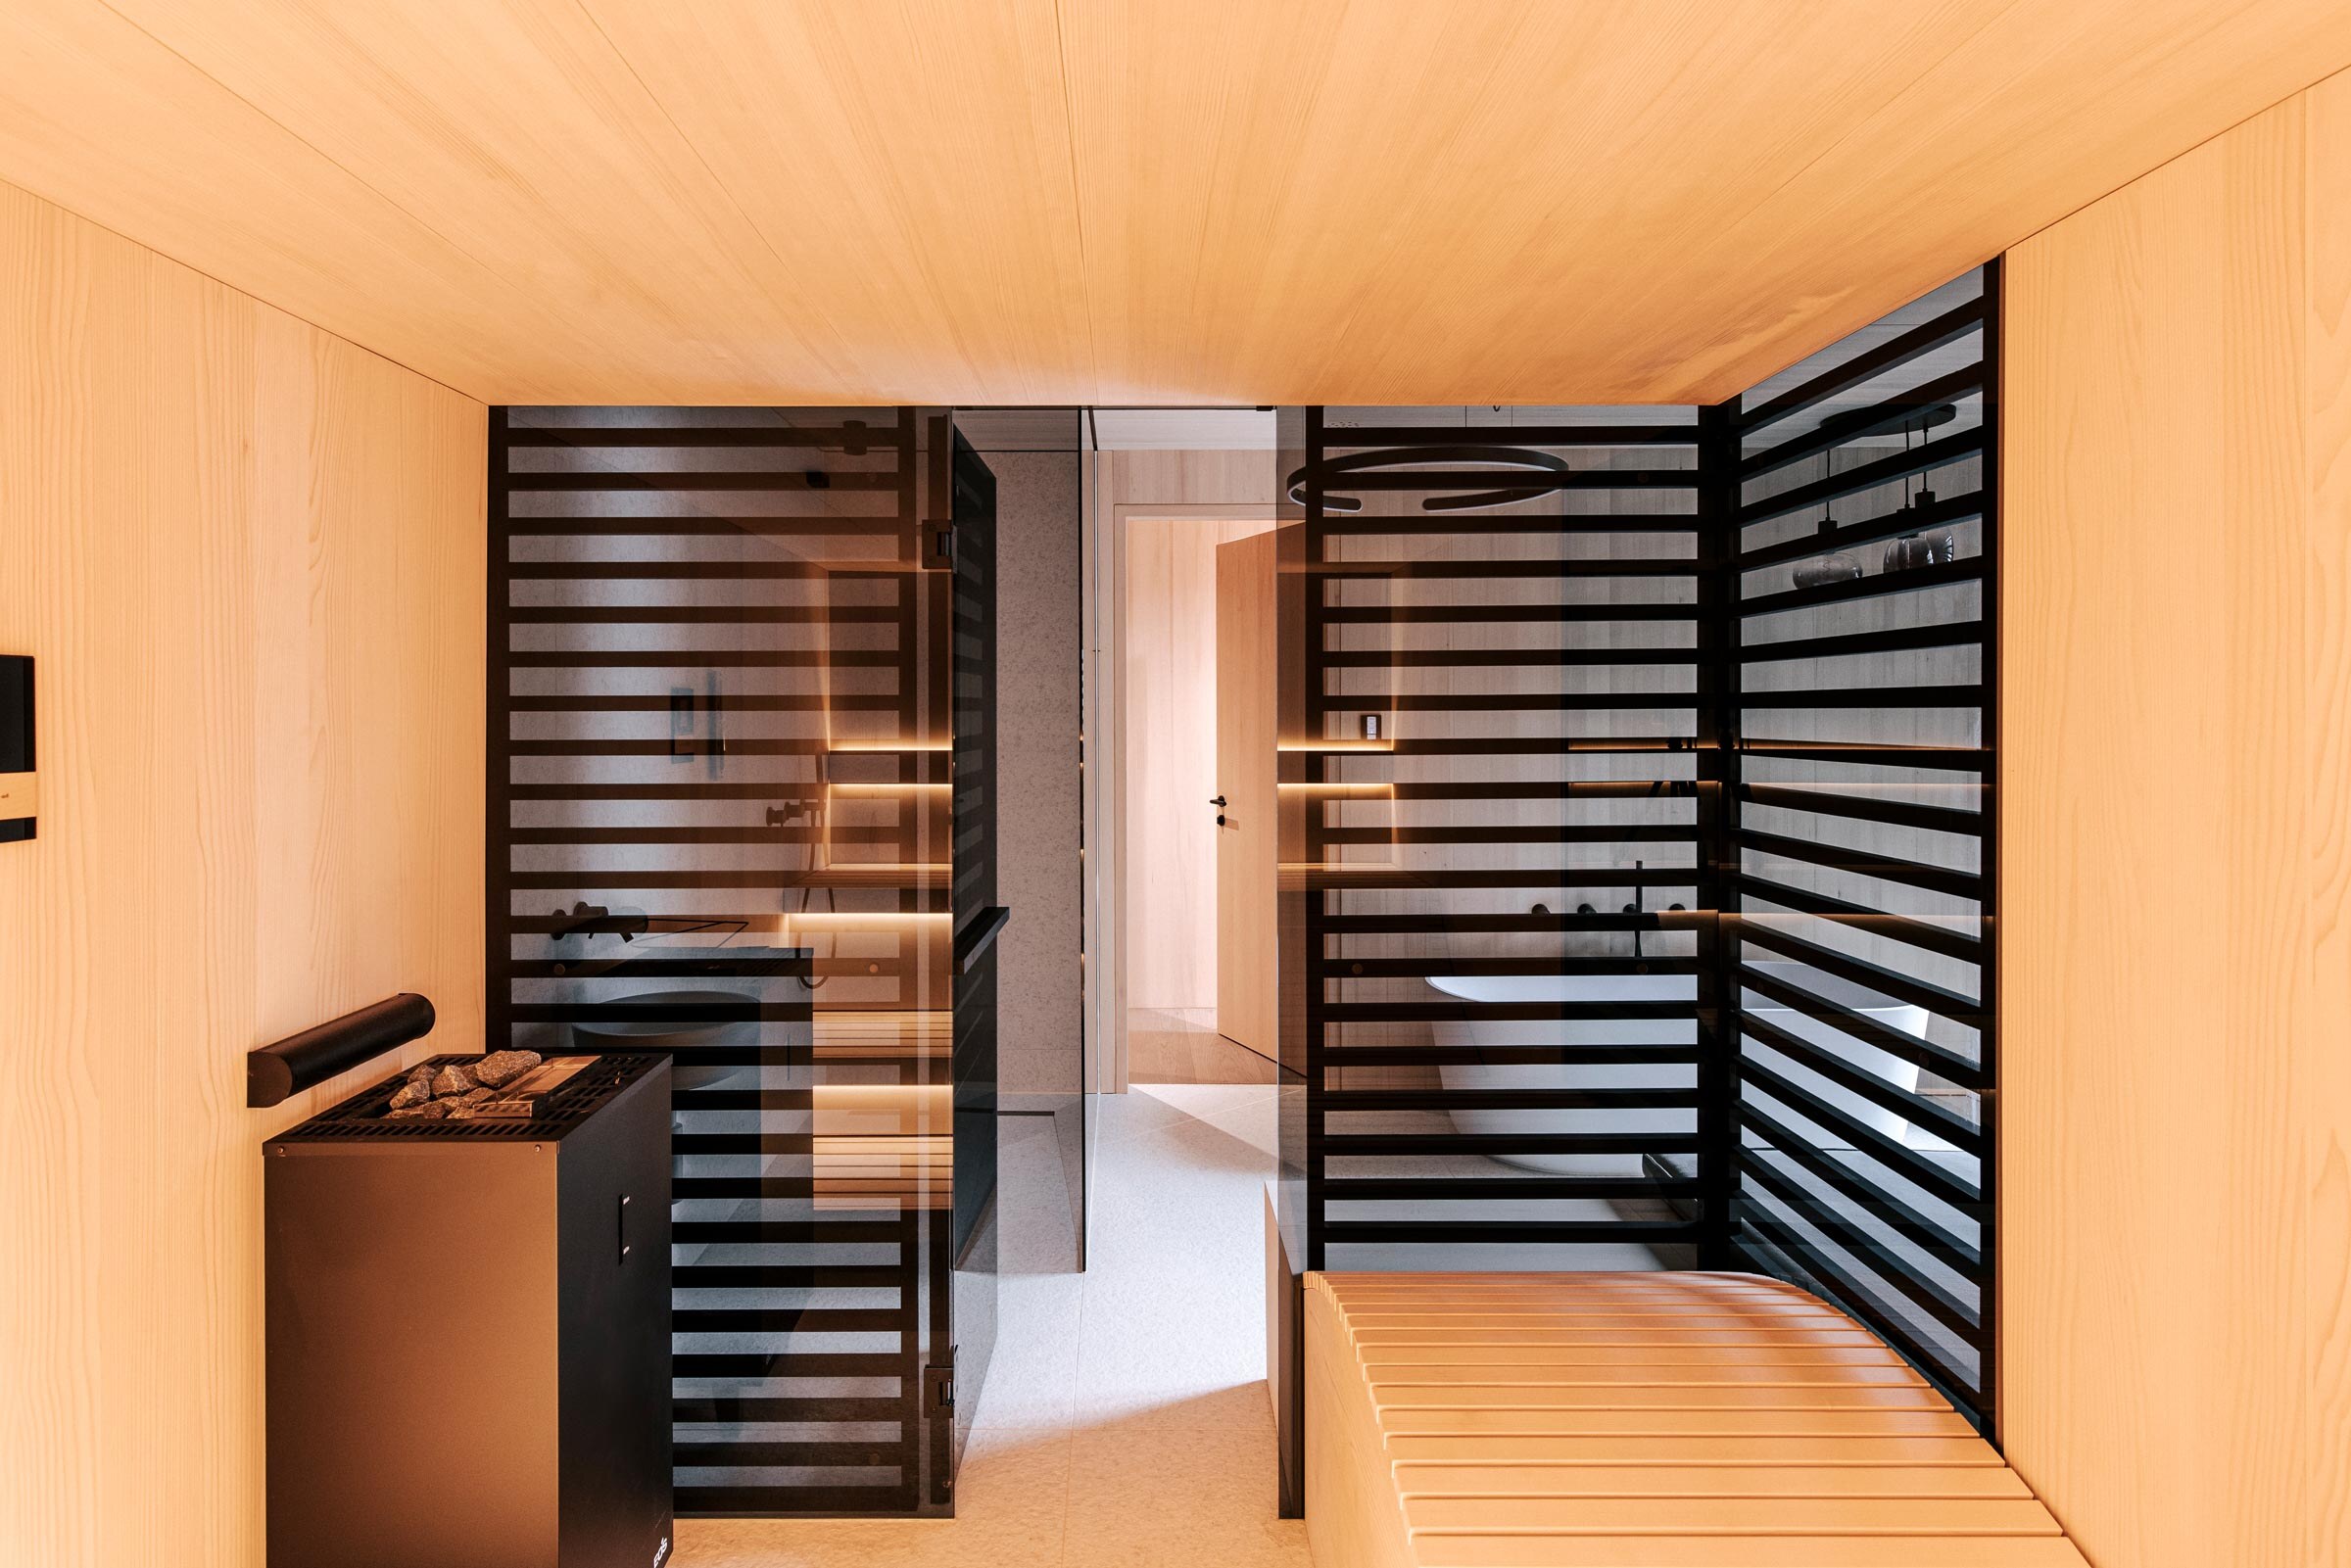 Ausblick aus der Sauna in das Badezimmer im Scandi Stil, ausgefuehrt in hellen gesaegtem Tannenholz, mit ergonomischer Saunaliege und raumhoher Verkleidung aus schwarz getoenten Holzstreben als Sichtschutz.